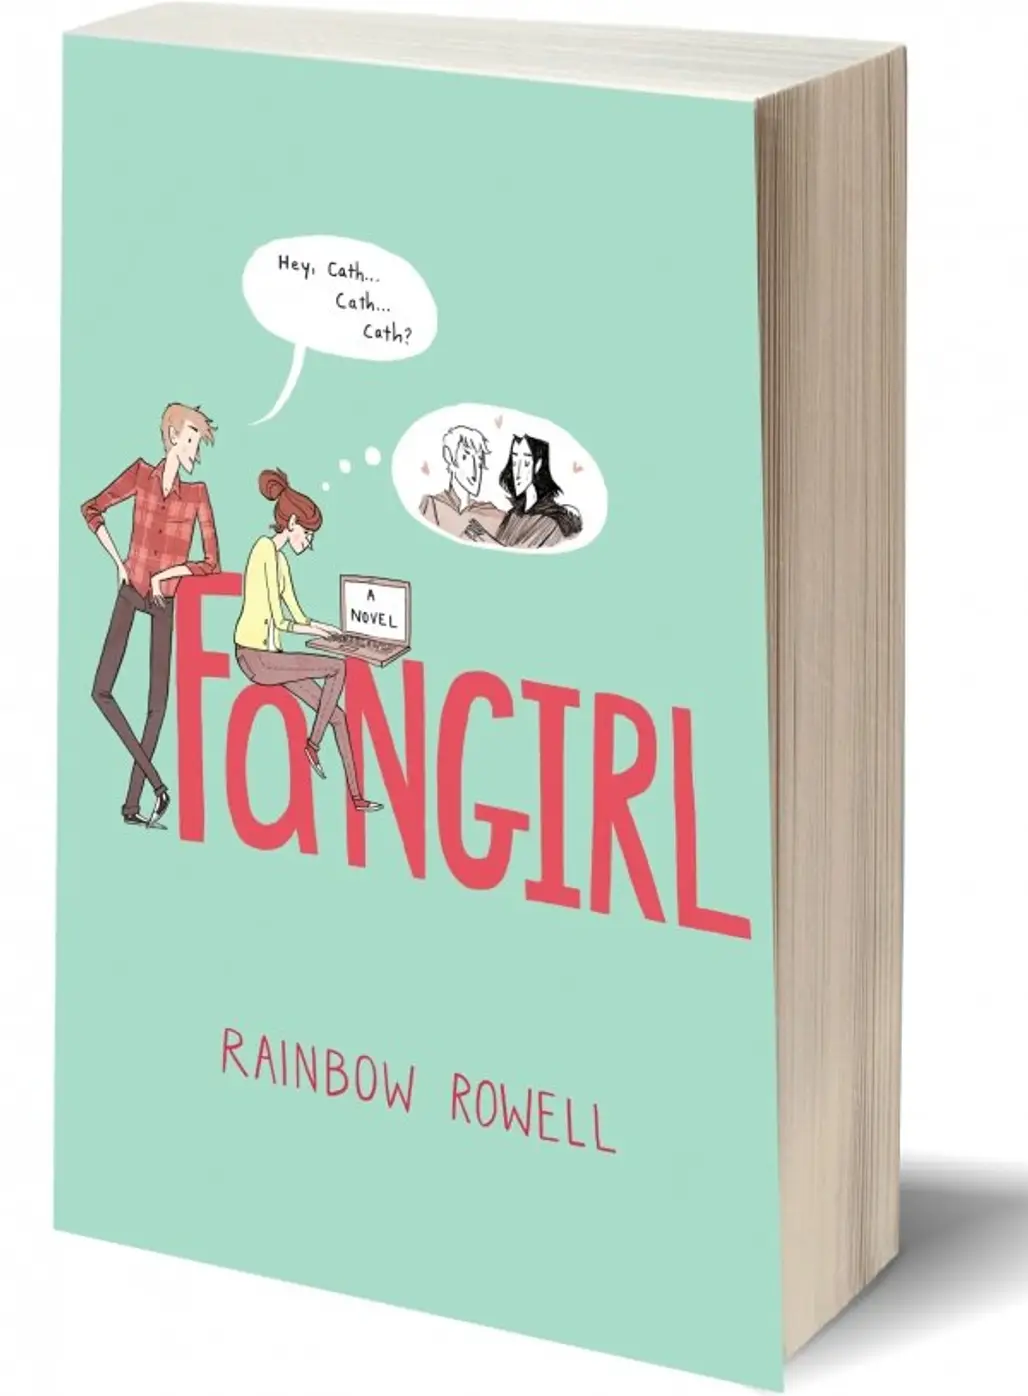 Fan Girl by Rainbow Rowell